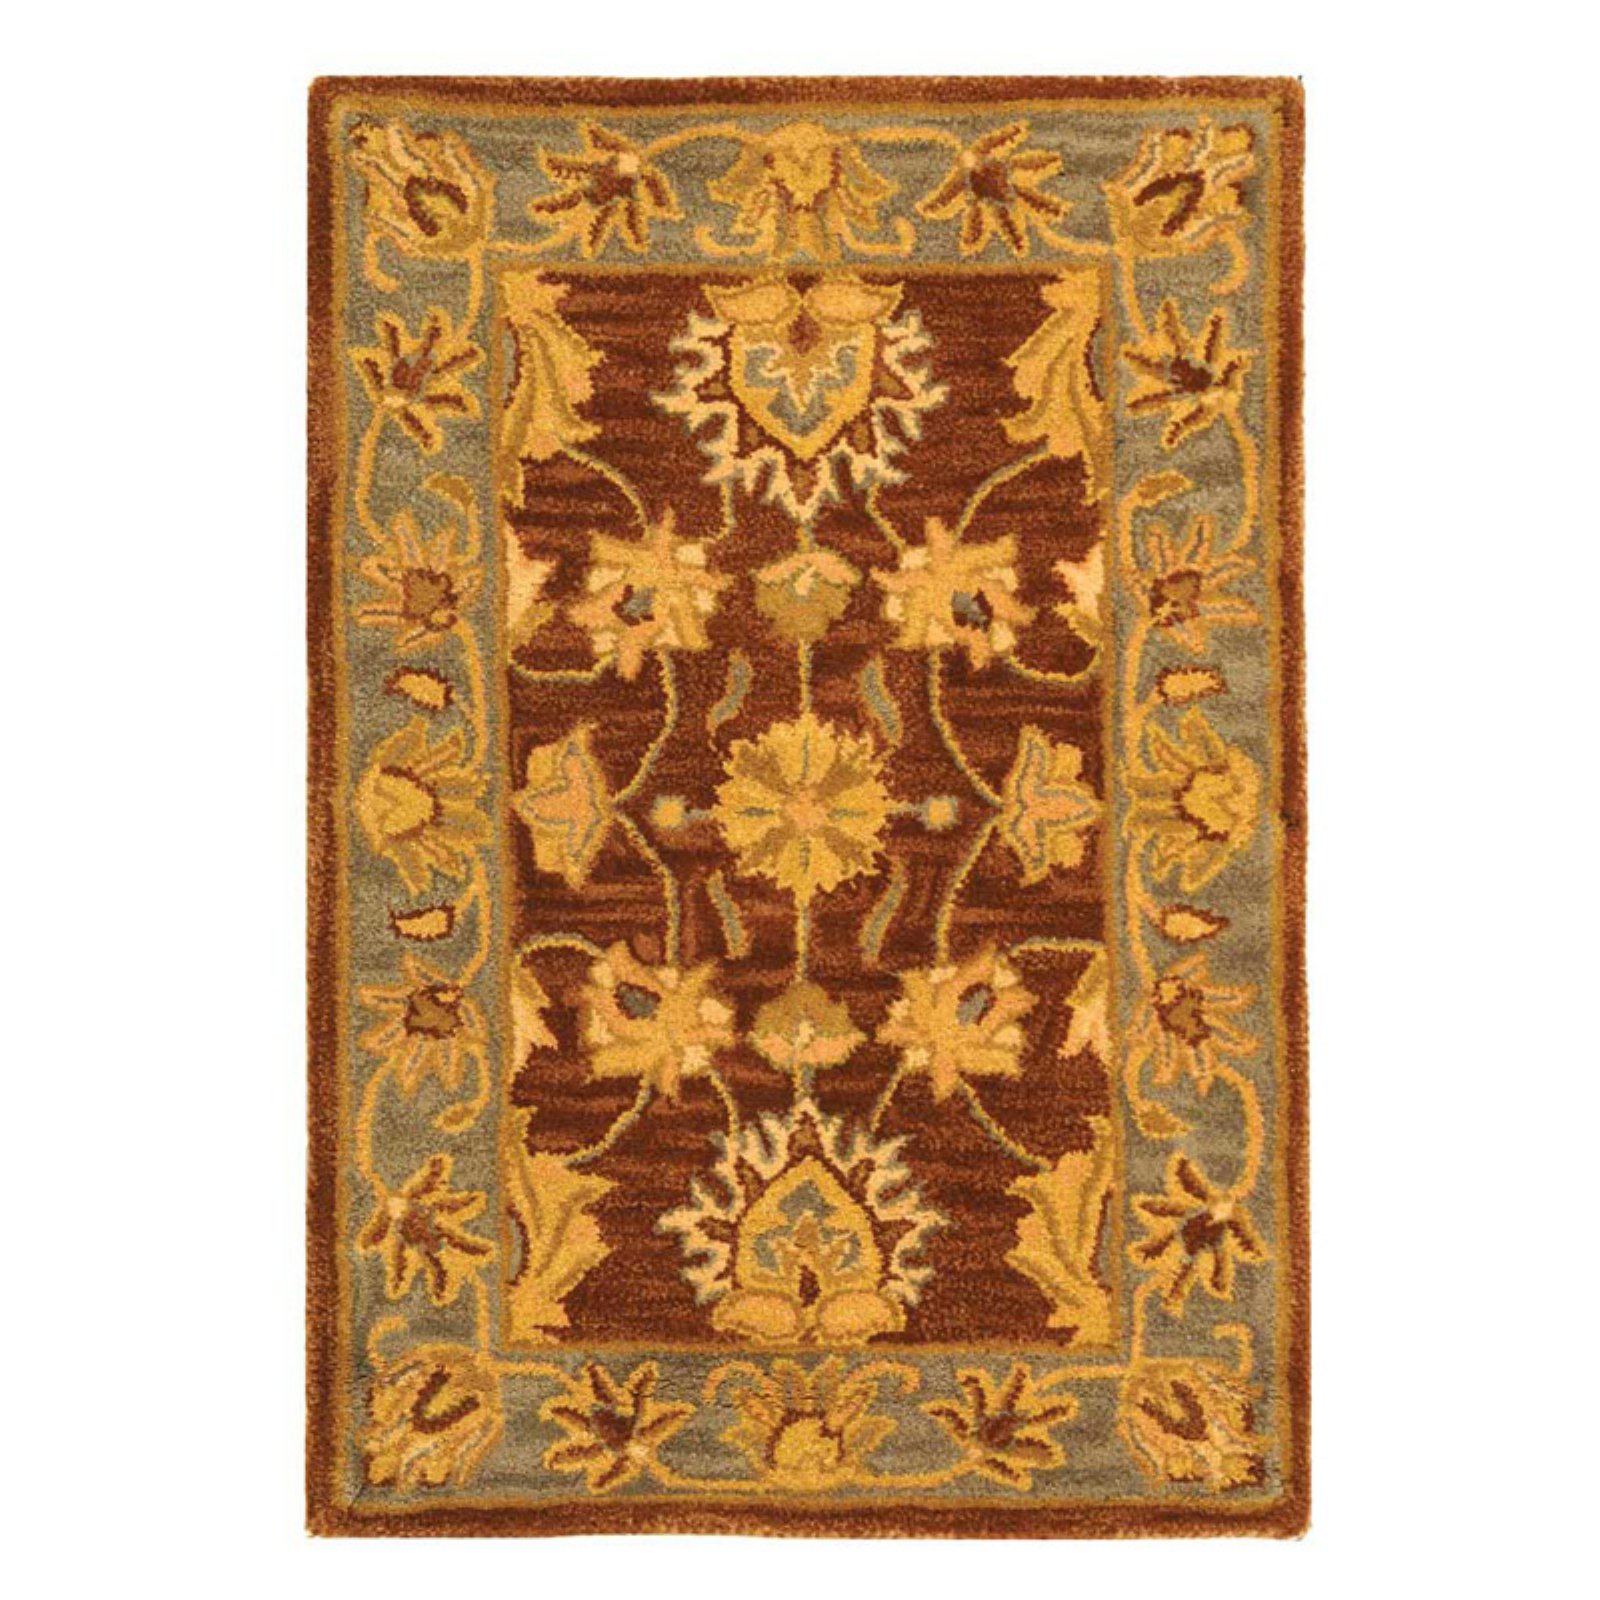 SAFAVIEH Heritage Regis Traditional Wool Area Rug, Brown/Blue, 3' x 5' - image 1 of 4